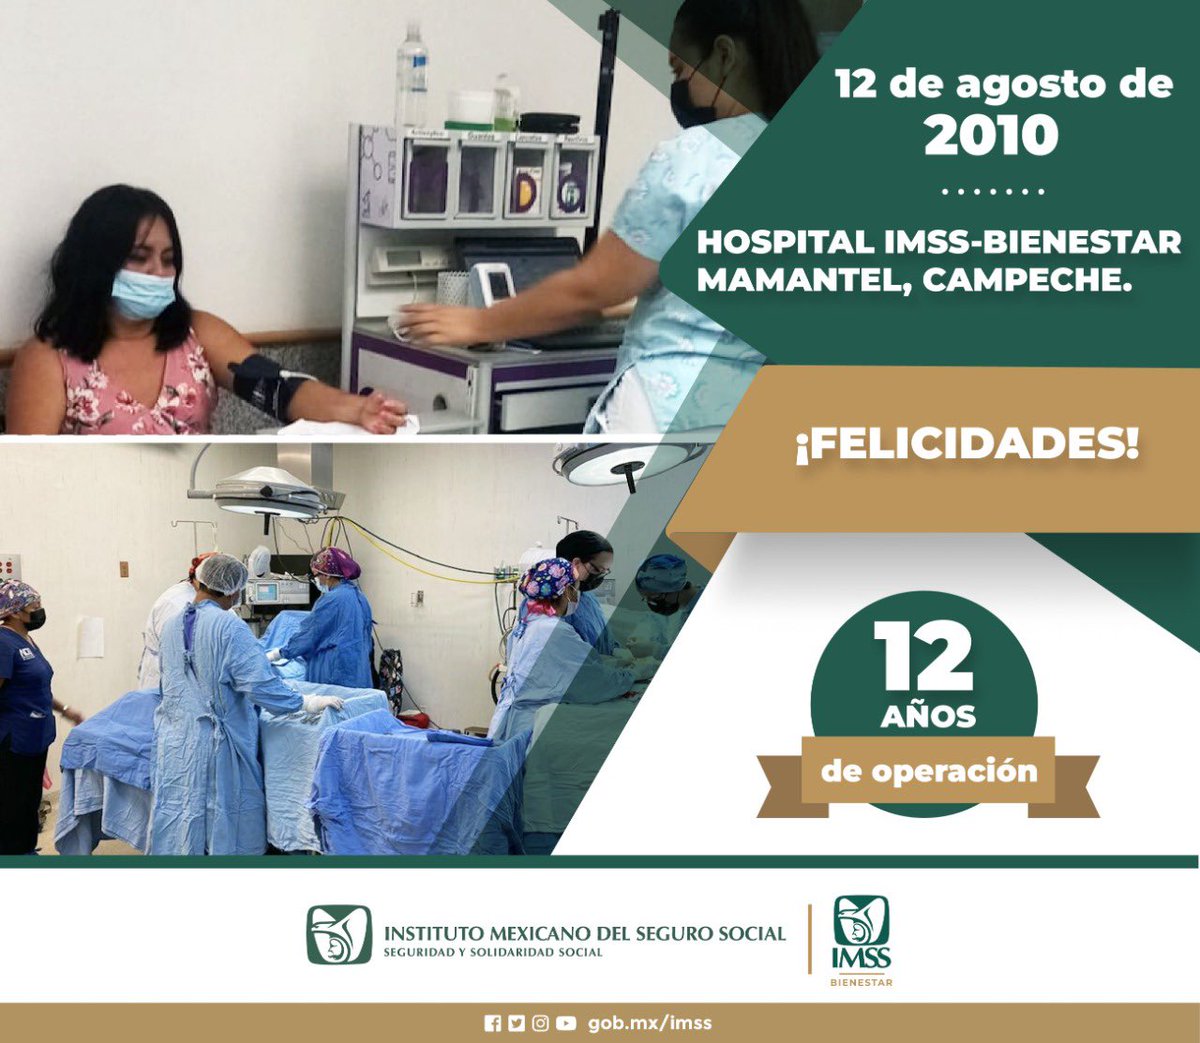 Hoy el Hospital #IMSSBIENESTAR Mamantel en #Campeche cumple 12 años de operación. ¡Muchas felicidades!